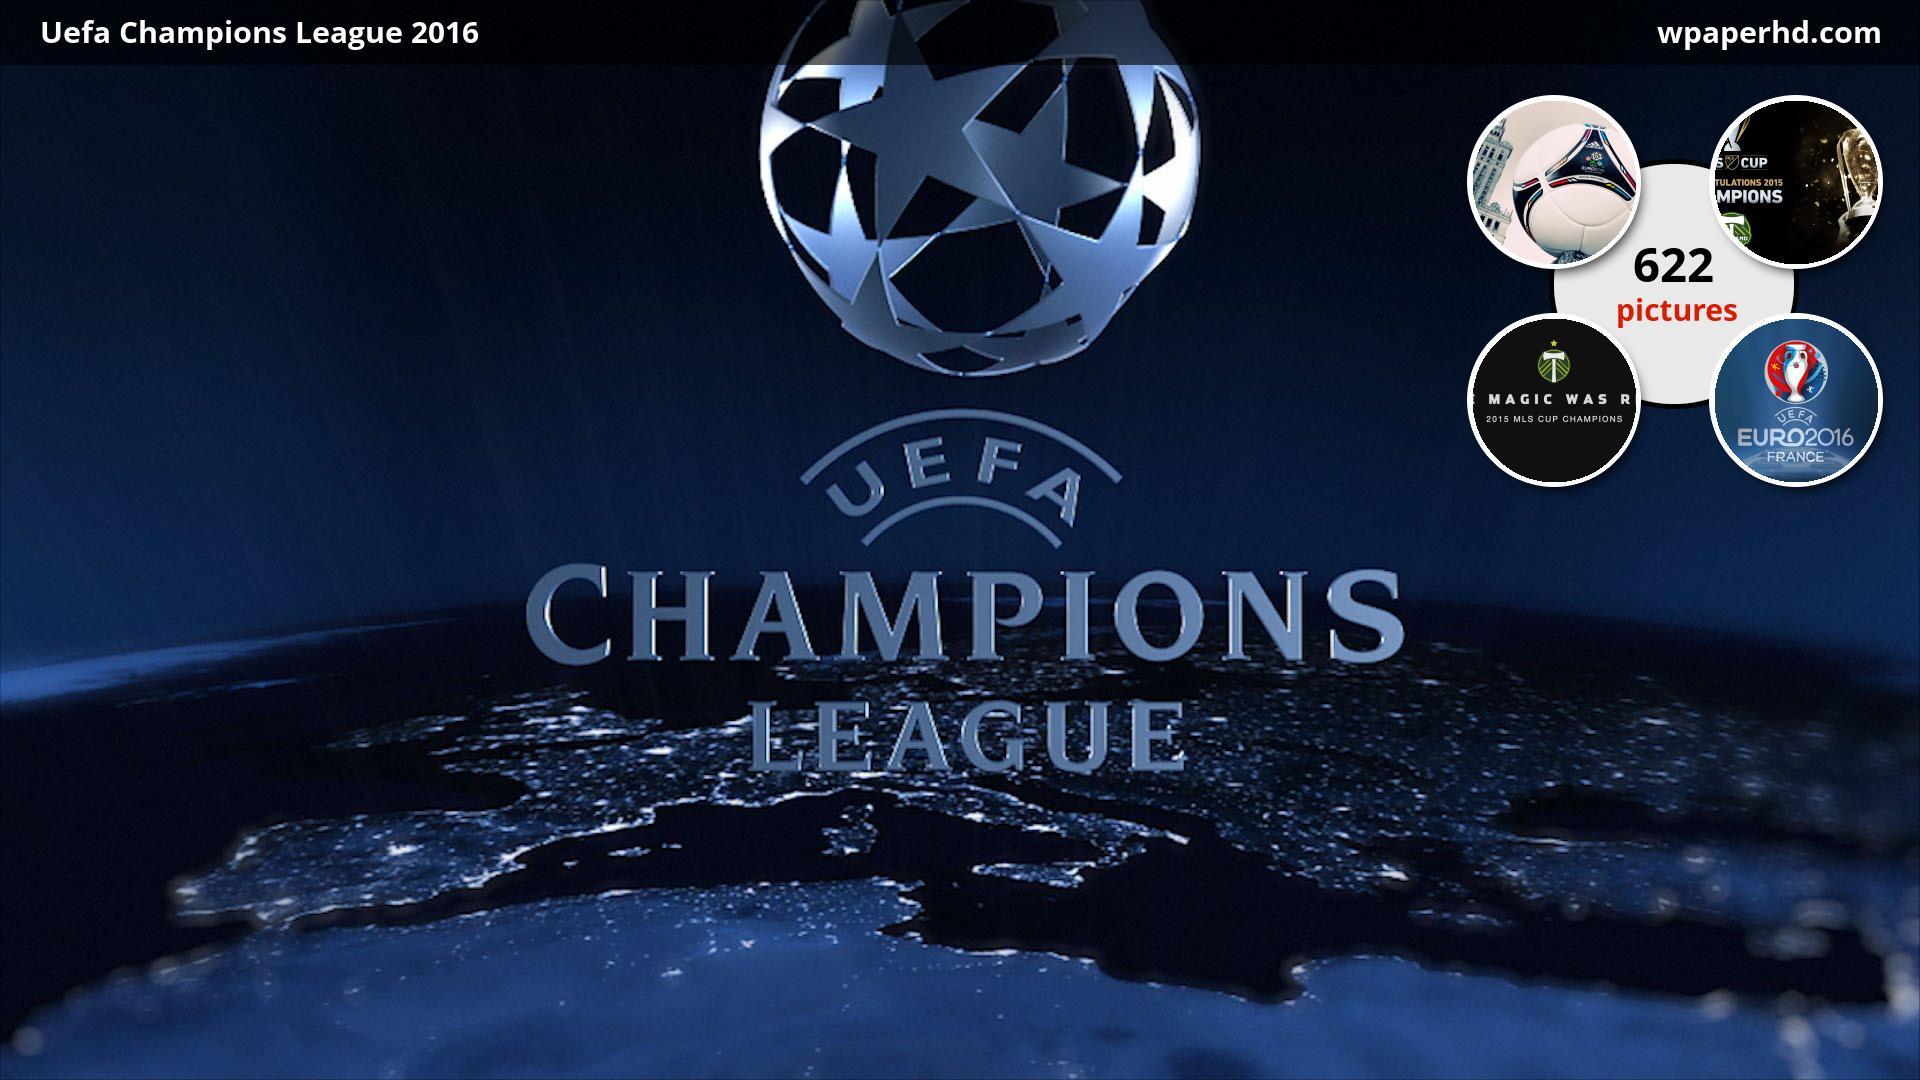 UEFA Champions League Wallpaper, Best UEFA Champions League